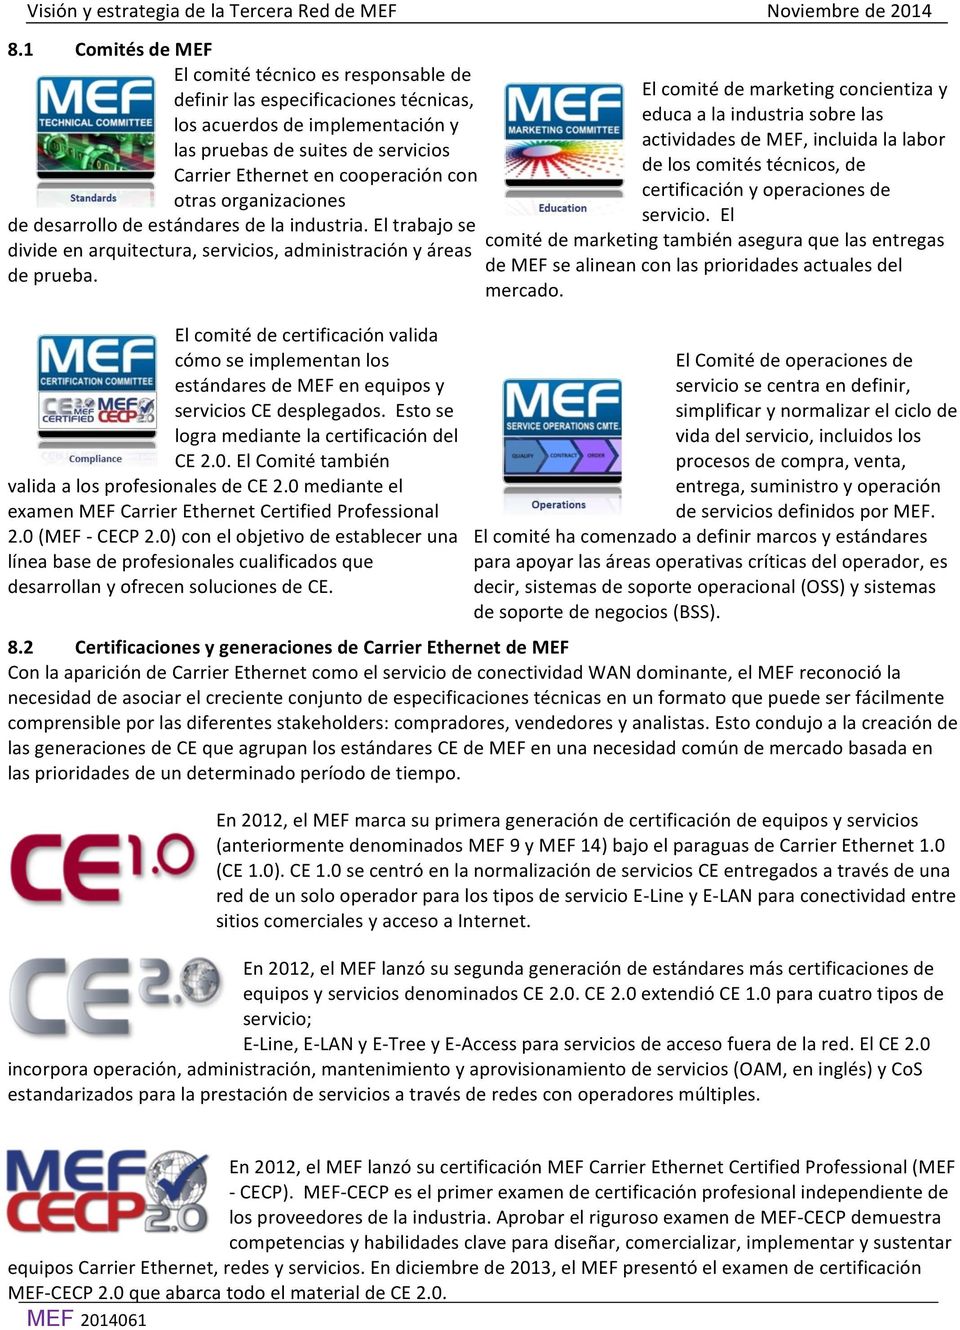 El comité de certificación valida cómo se implementan los estándares de MEF en equipos y servicios CE desplegados. Esto se logra mediante la certificación del CE 2.0.